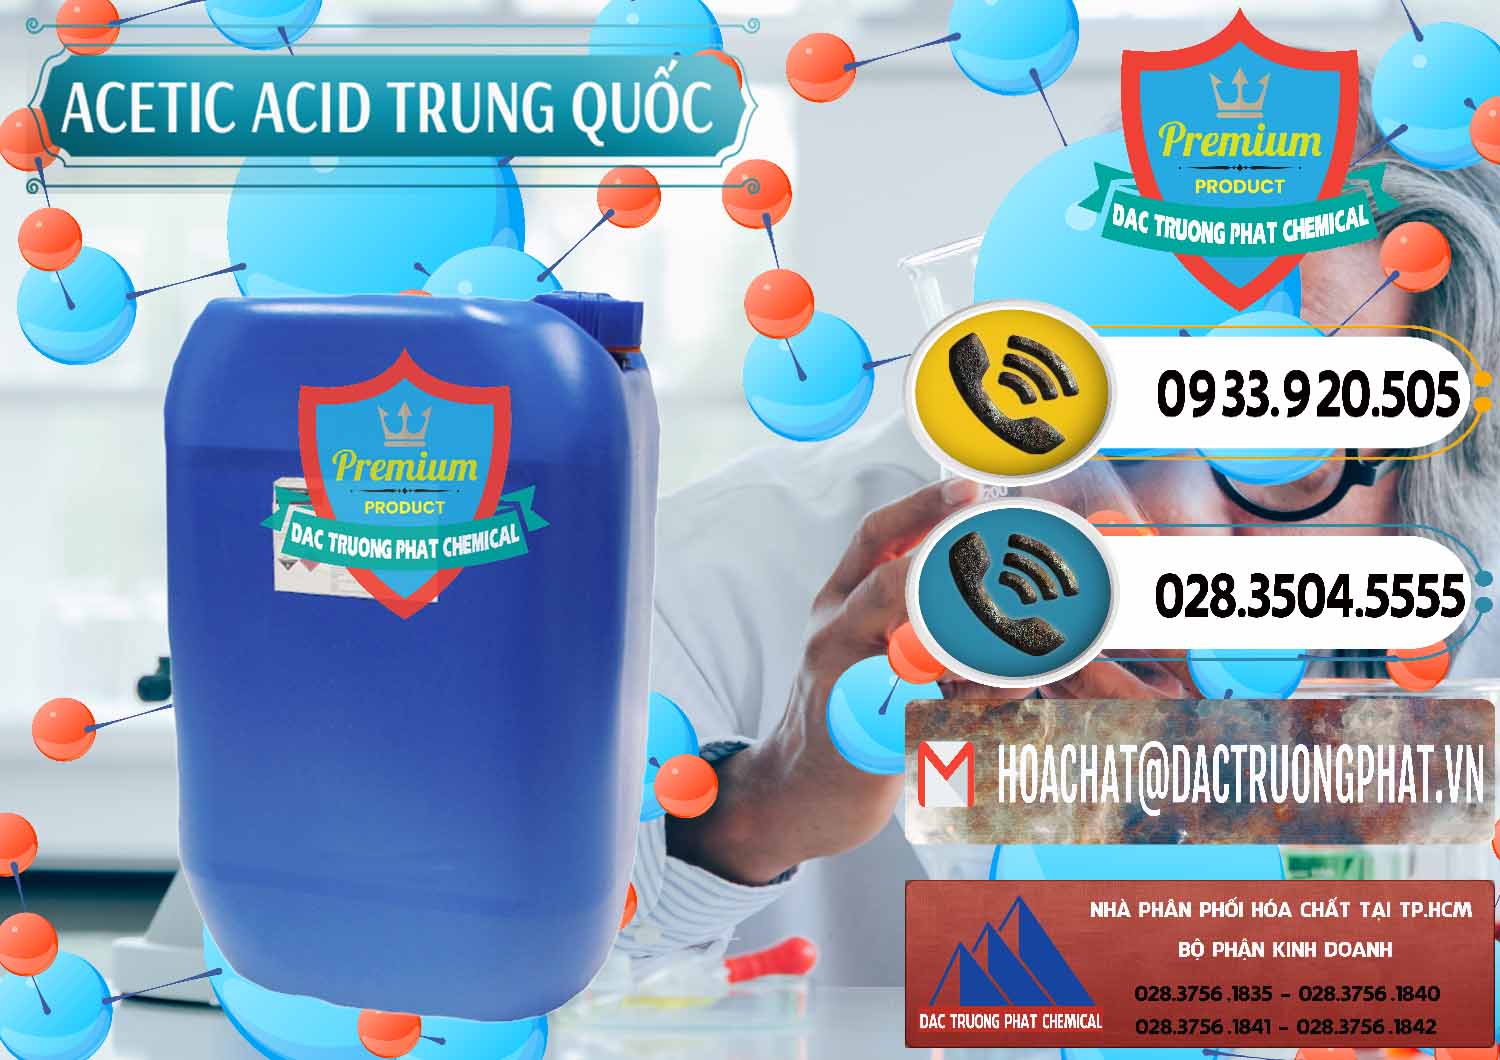 Nơi chuyên phân phối - bán Acetic Acid – Axit Acetic Trung Quốc China - 0358 - Nhà cung cấp _ kinh doanh hóa chất tại TP.HCM - hoachatdetnhuom.vn